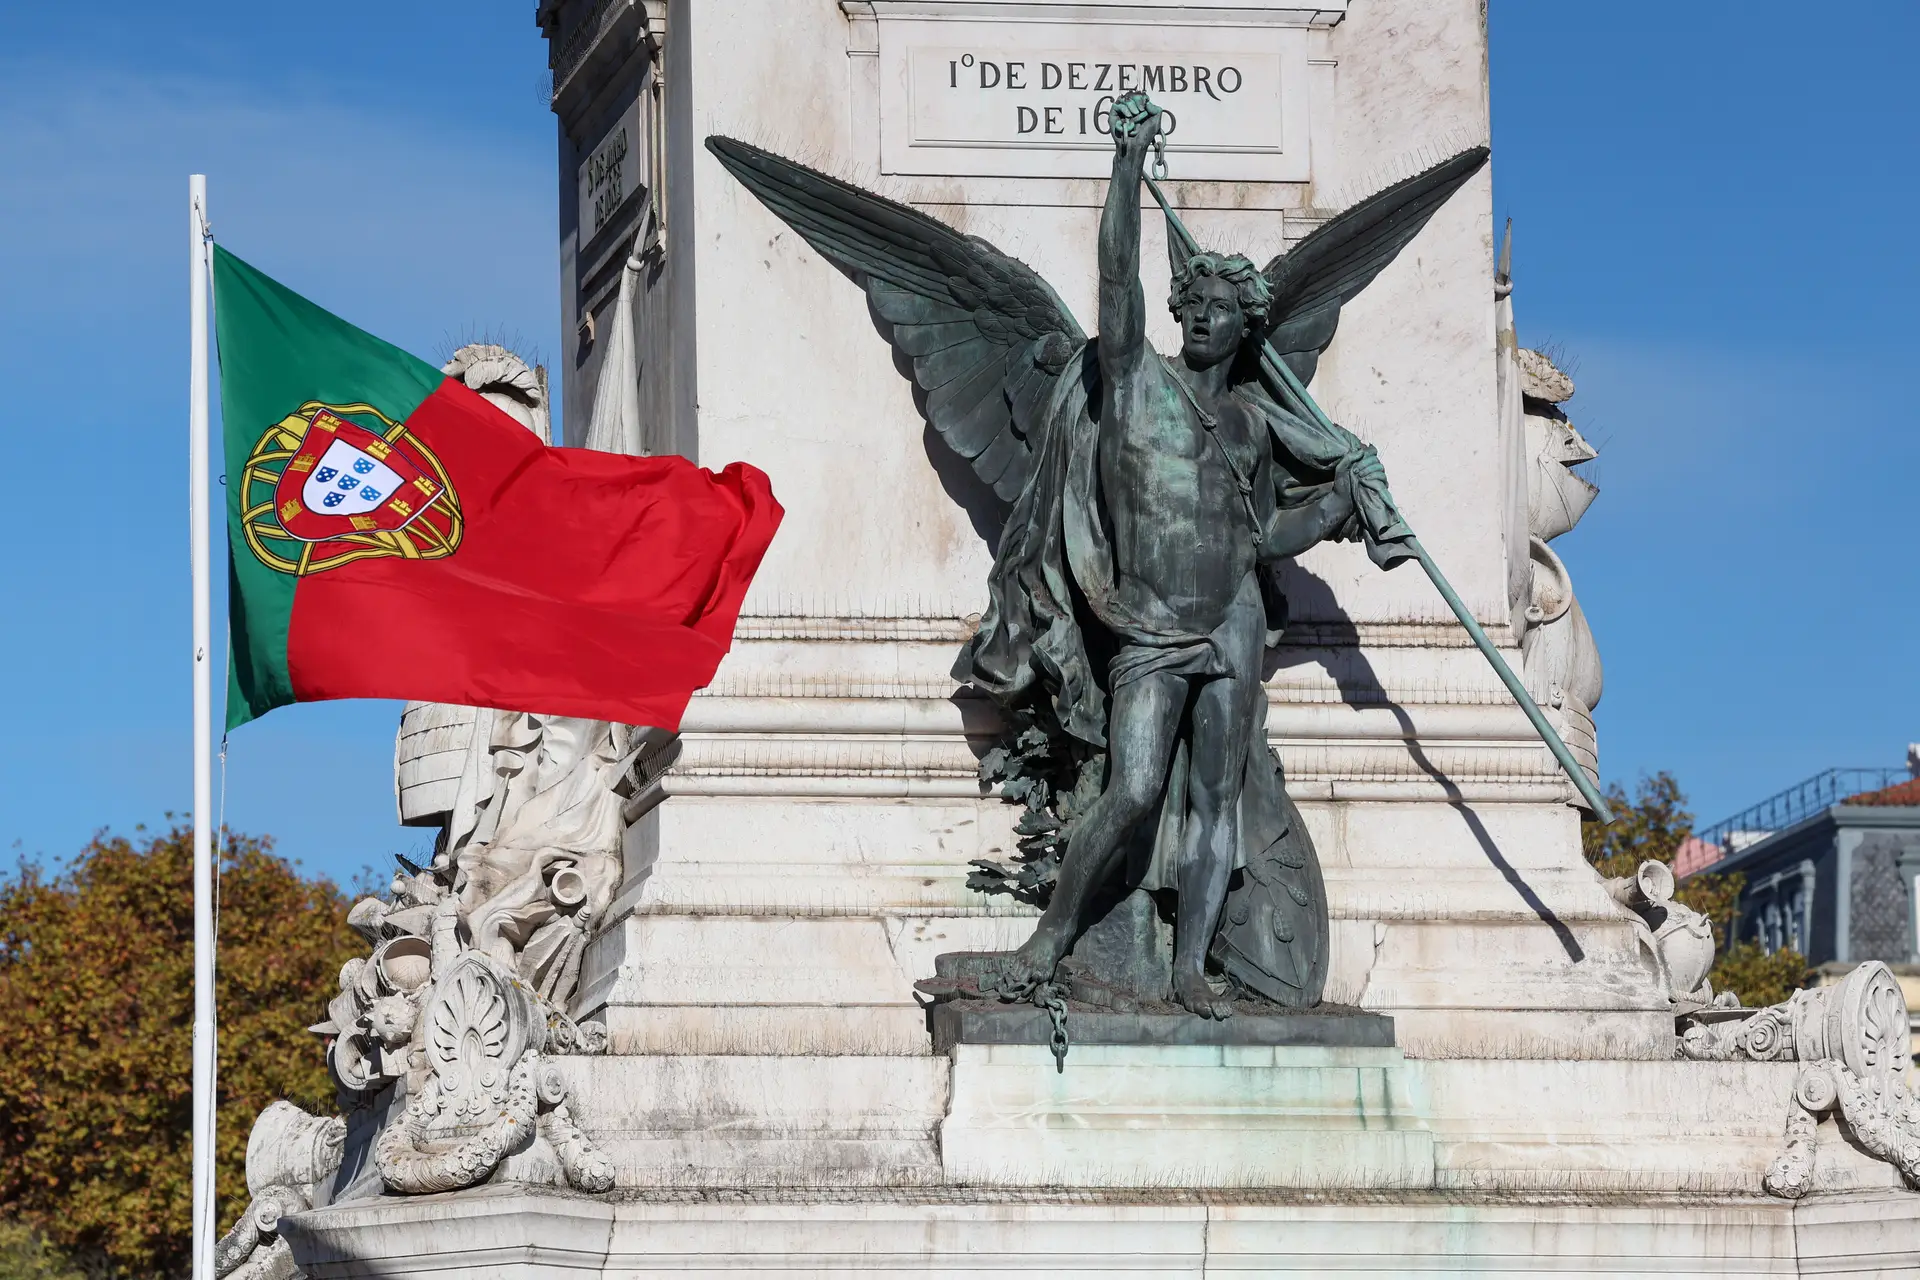 Bandeira portuguesa junto ao Monumento aos Restauradores durante a cerimónia de homenagem aos Heróis da Restauração da Independência de Portugal, na Praça dos Restauradores, em Lisboa.